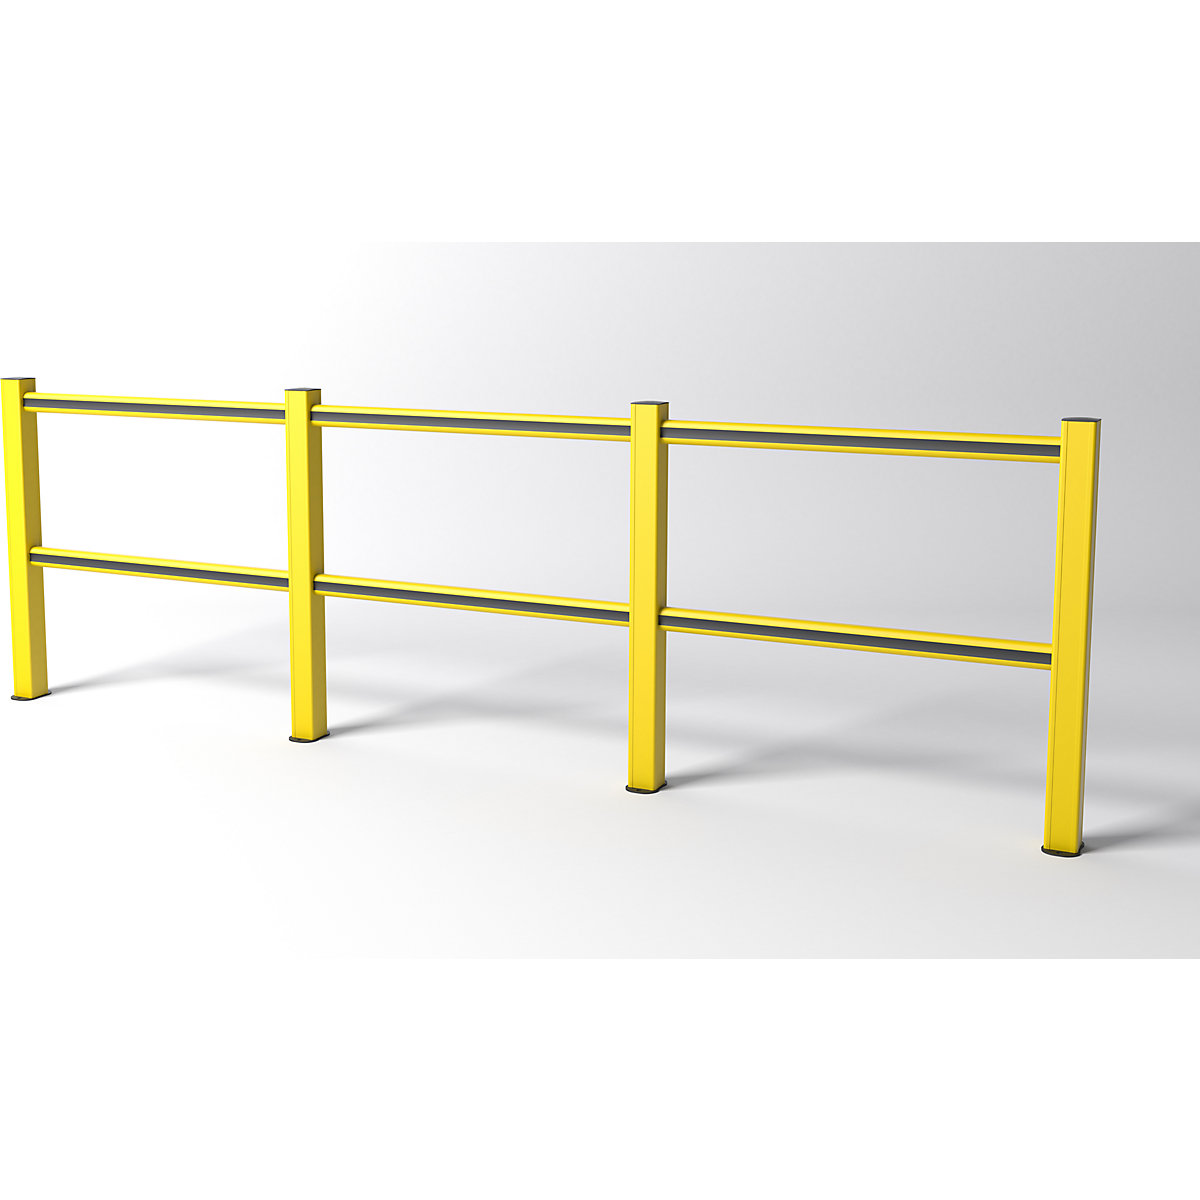 FLEX IMPACT railing, gele palen – geel/zwarte schoren, breedte 3750 mm-2